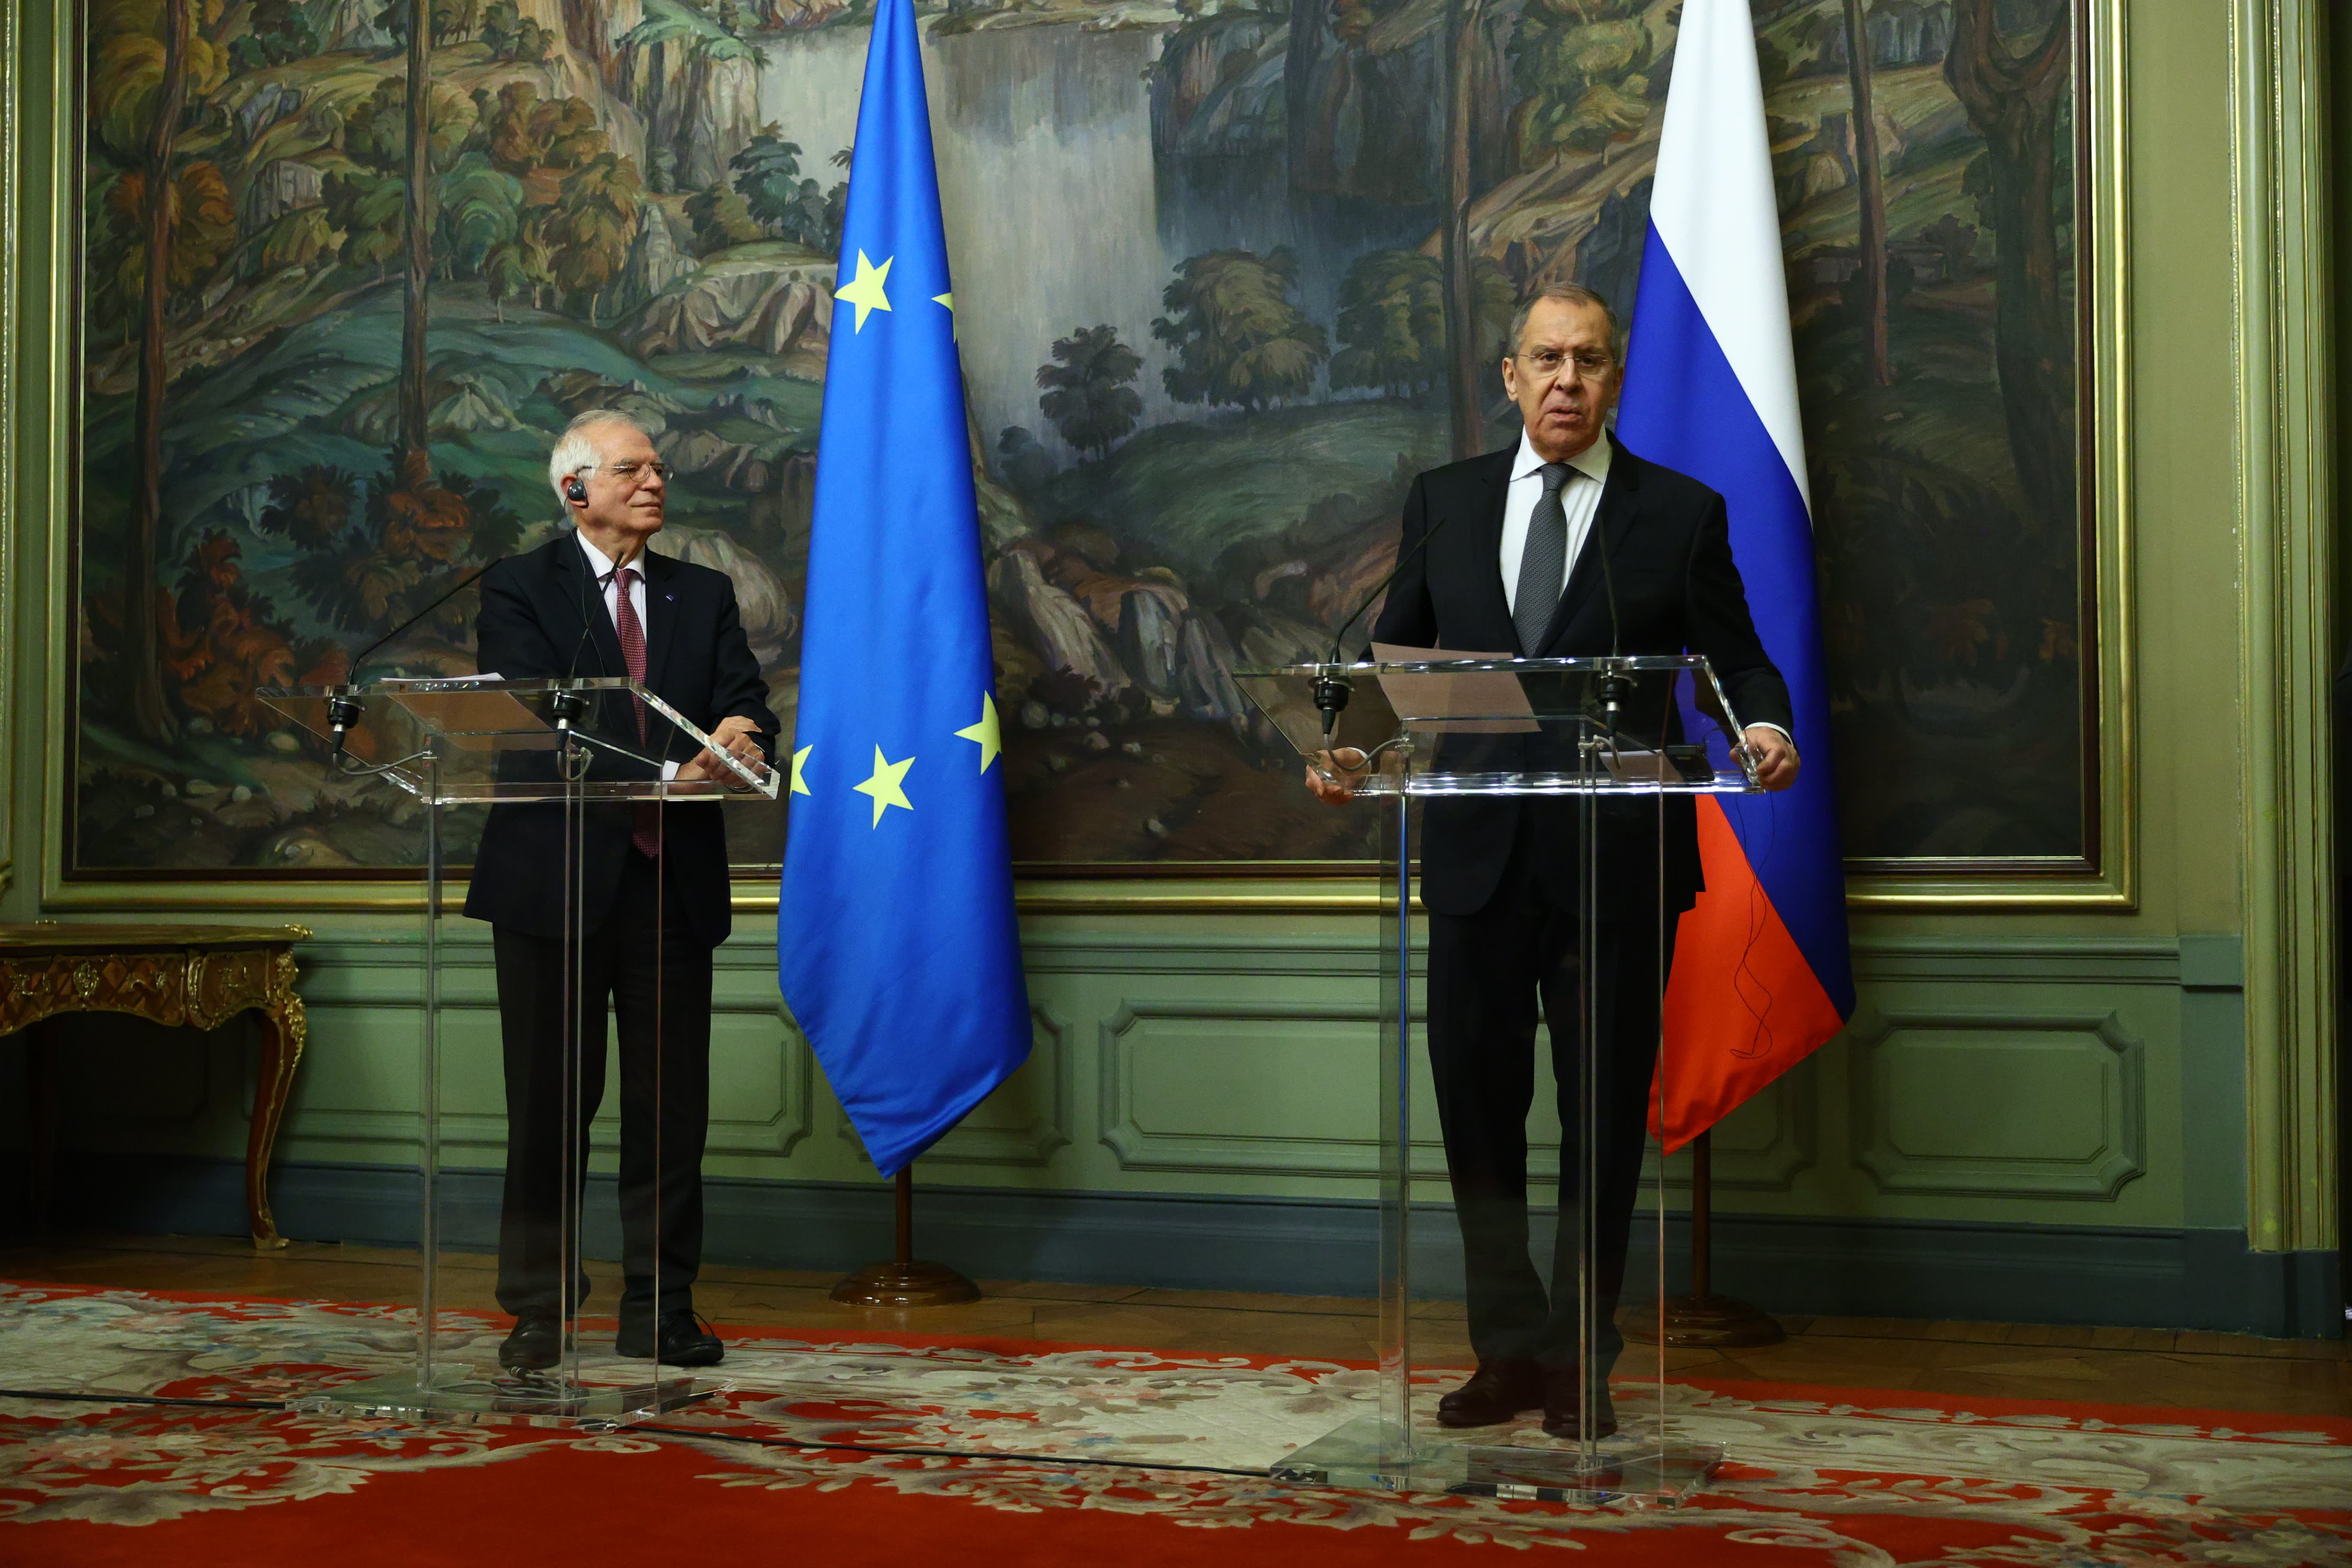 Pēc Lavrova komentāriem Maskavā spriedze starp Krieviju un Eiropas Savienību ir sasniegusi jaunu zemāko līmeni